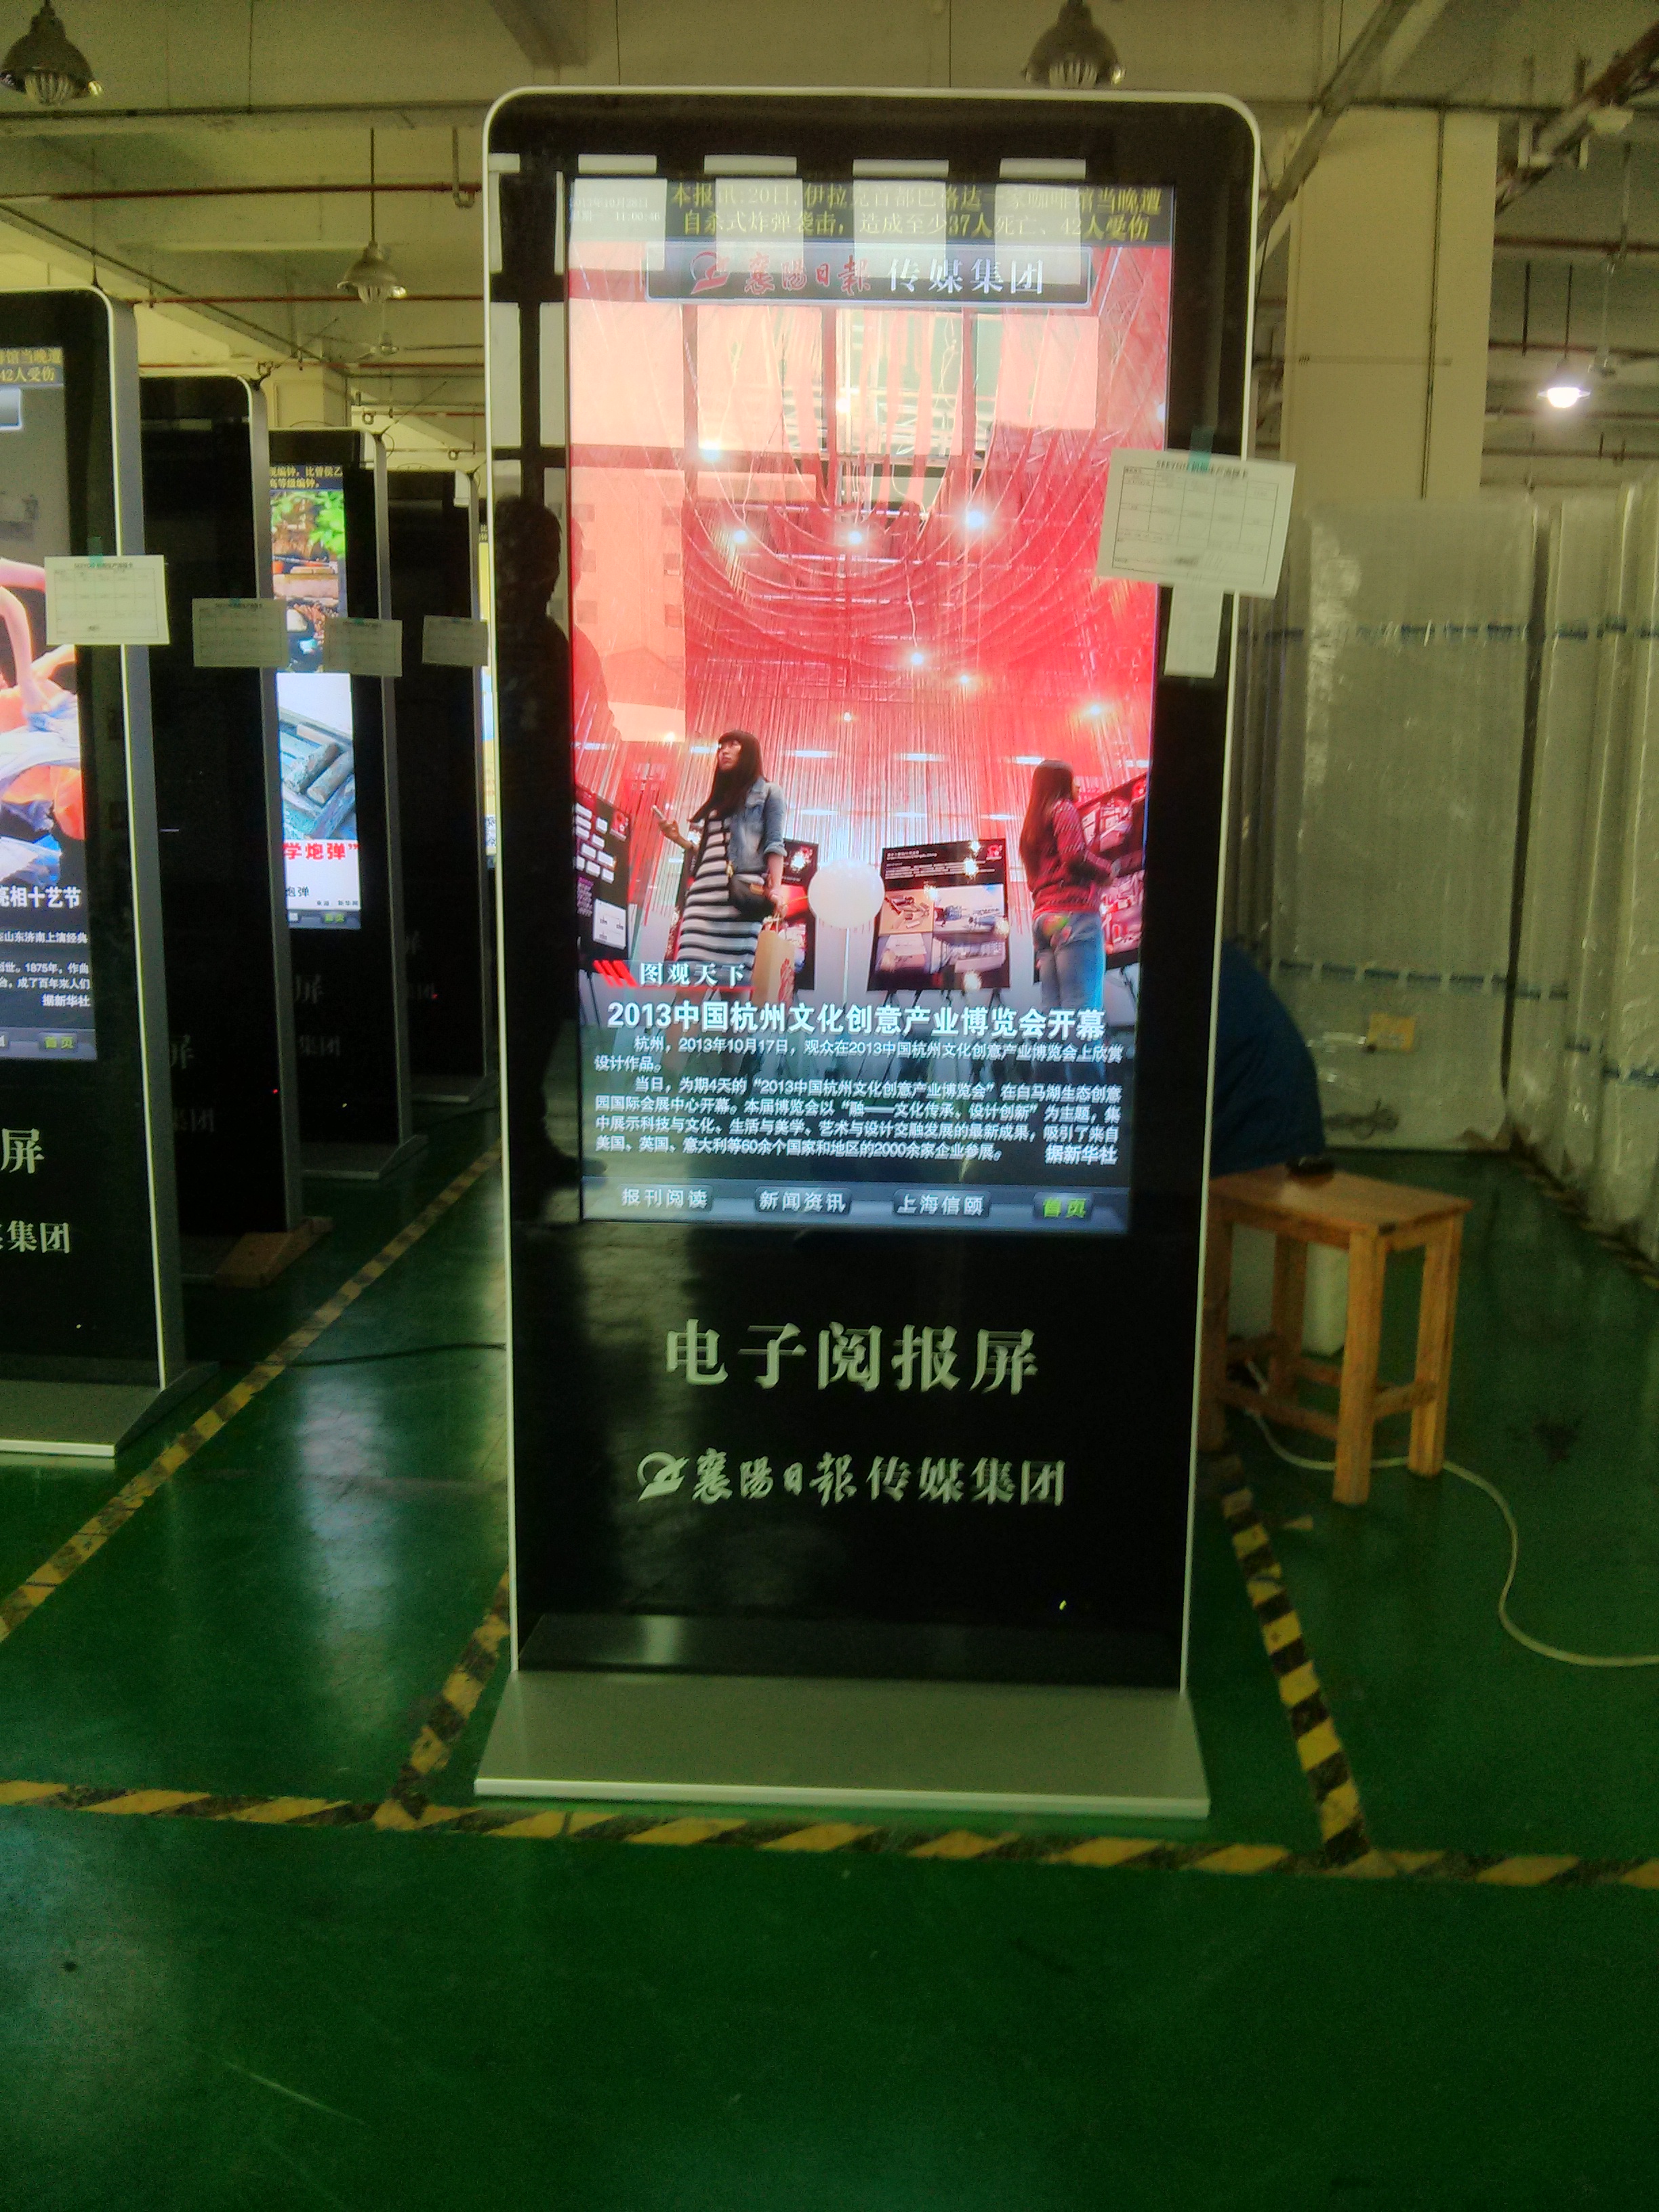 上海市上海户外高亮液晶广告刷屏机供应商厂家